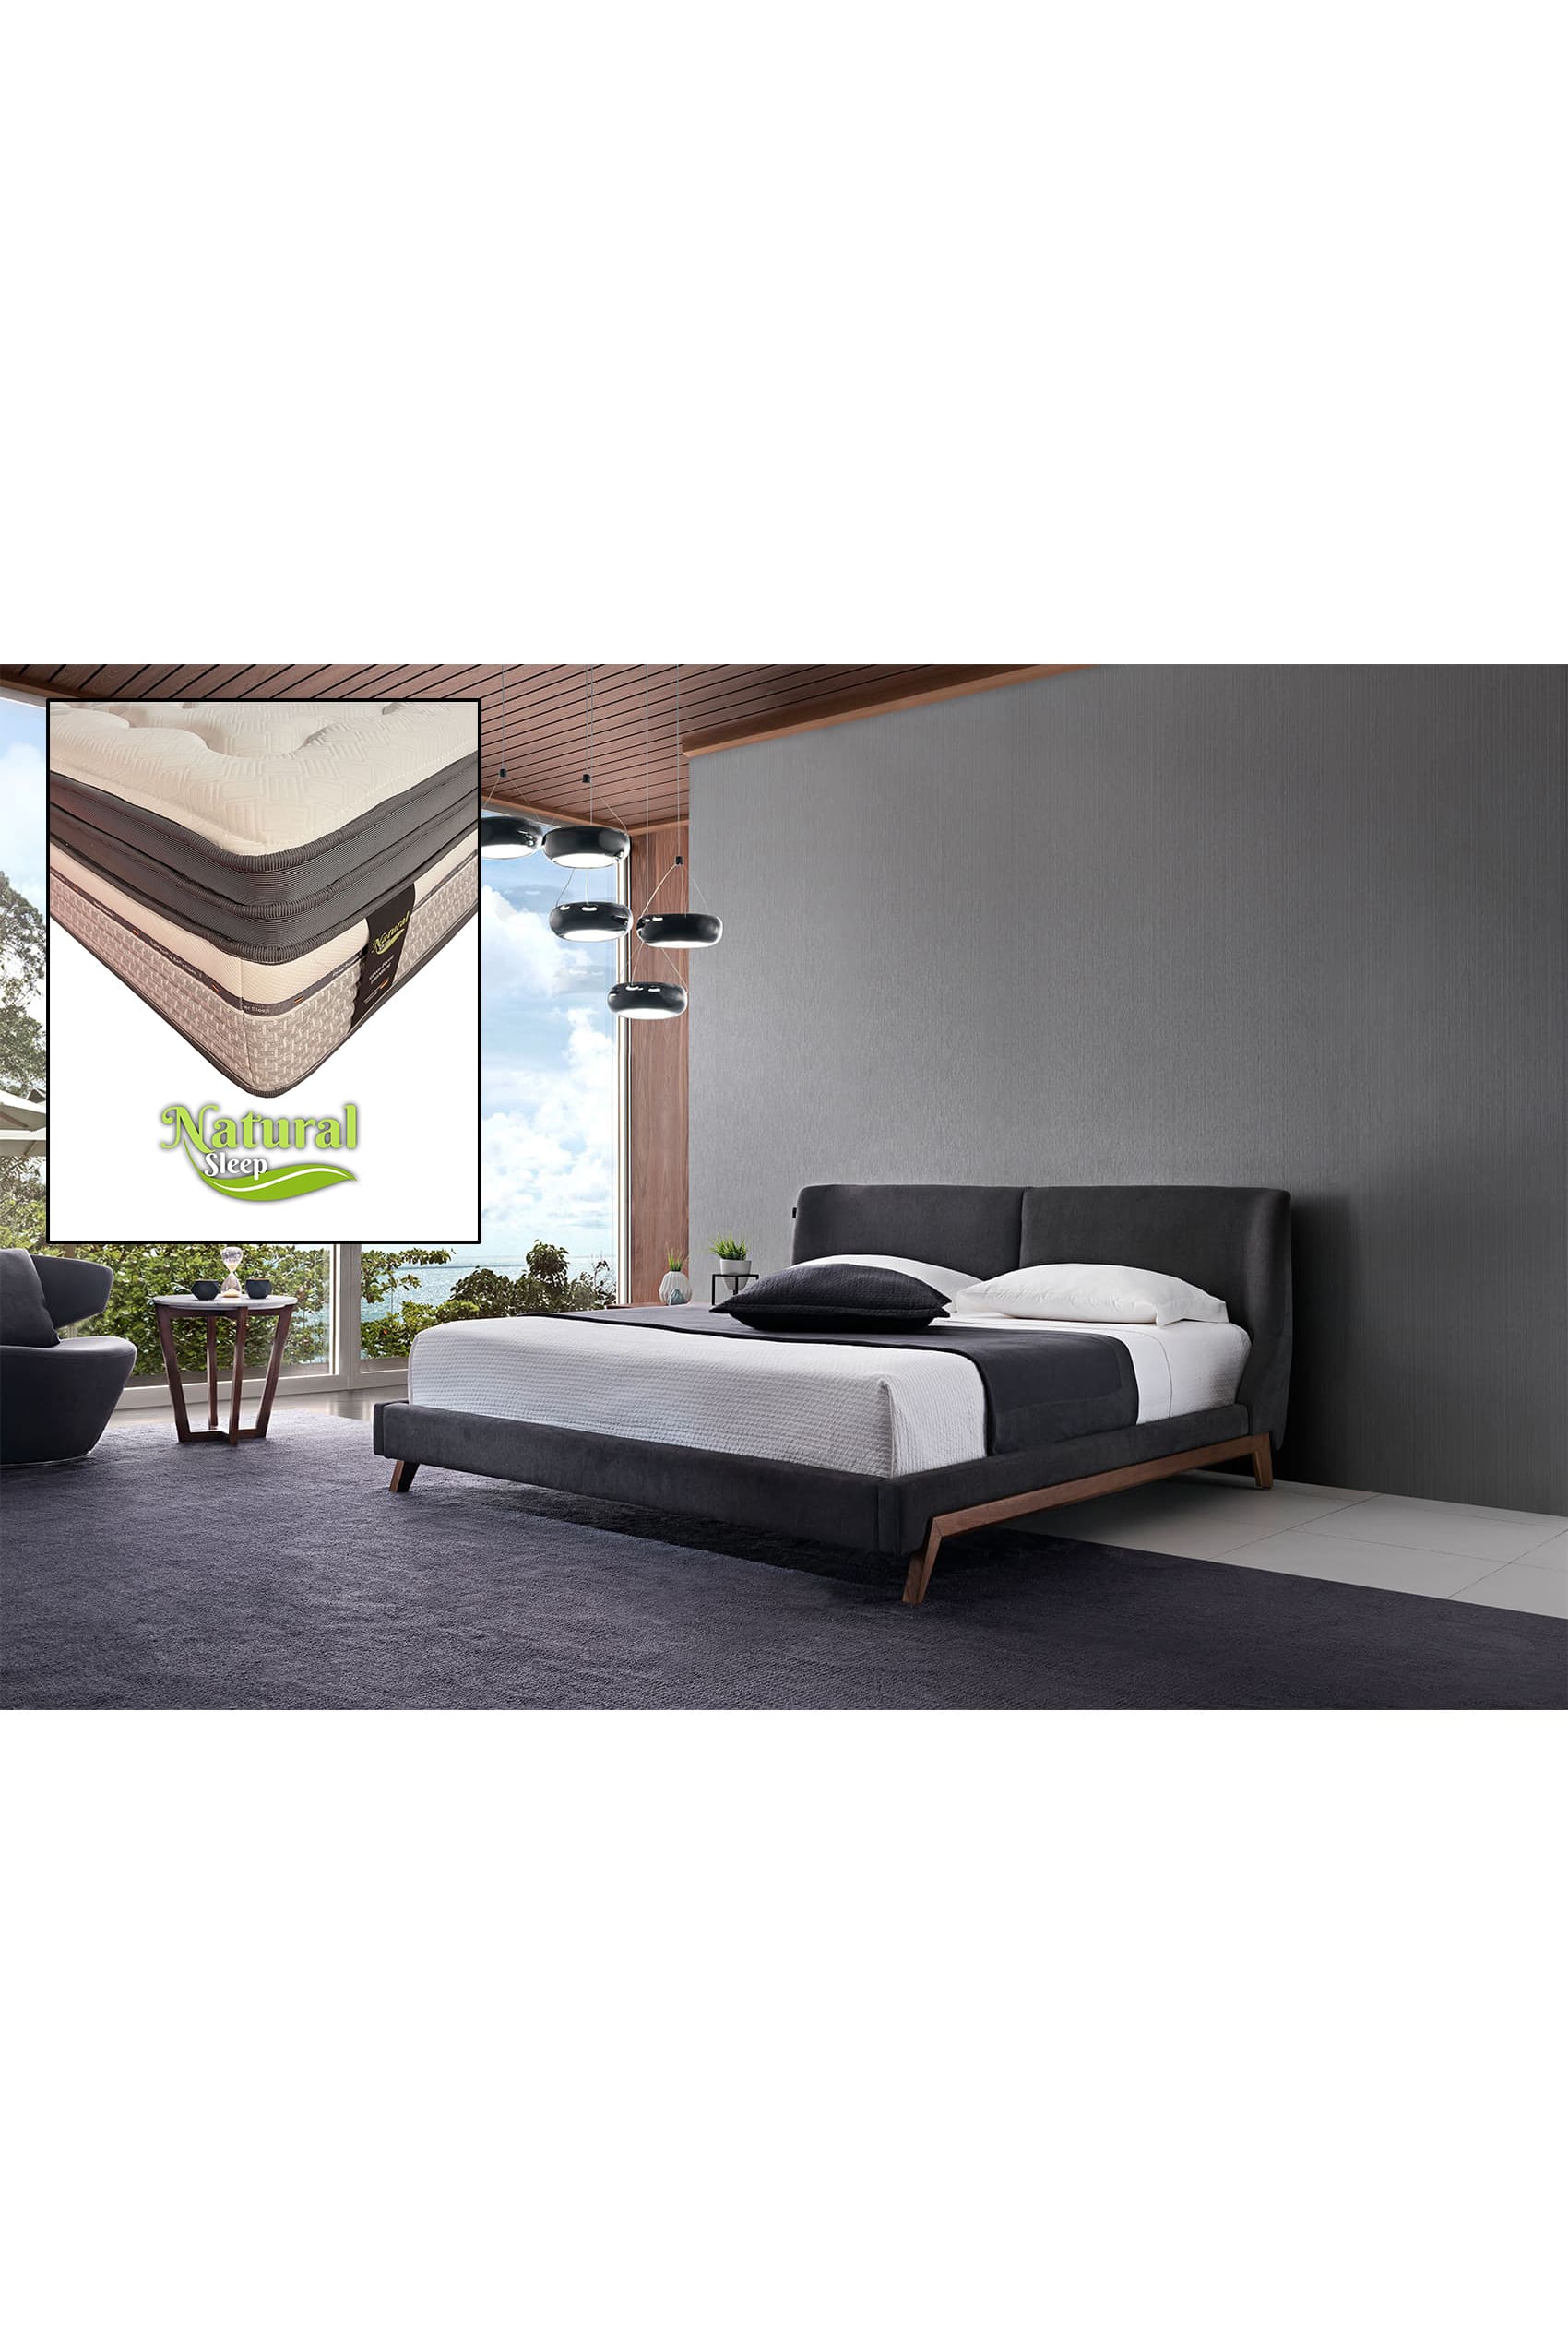 Sachi Designer Bed Frame + Natural Sleep Green Forest